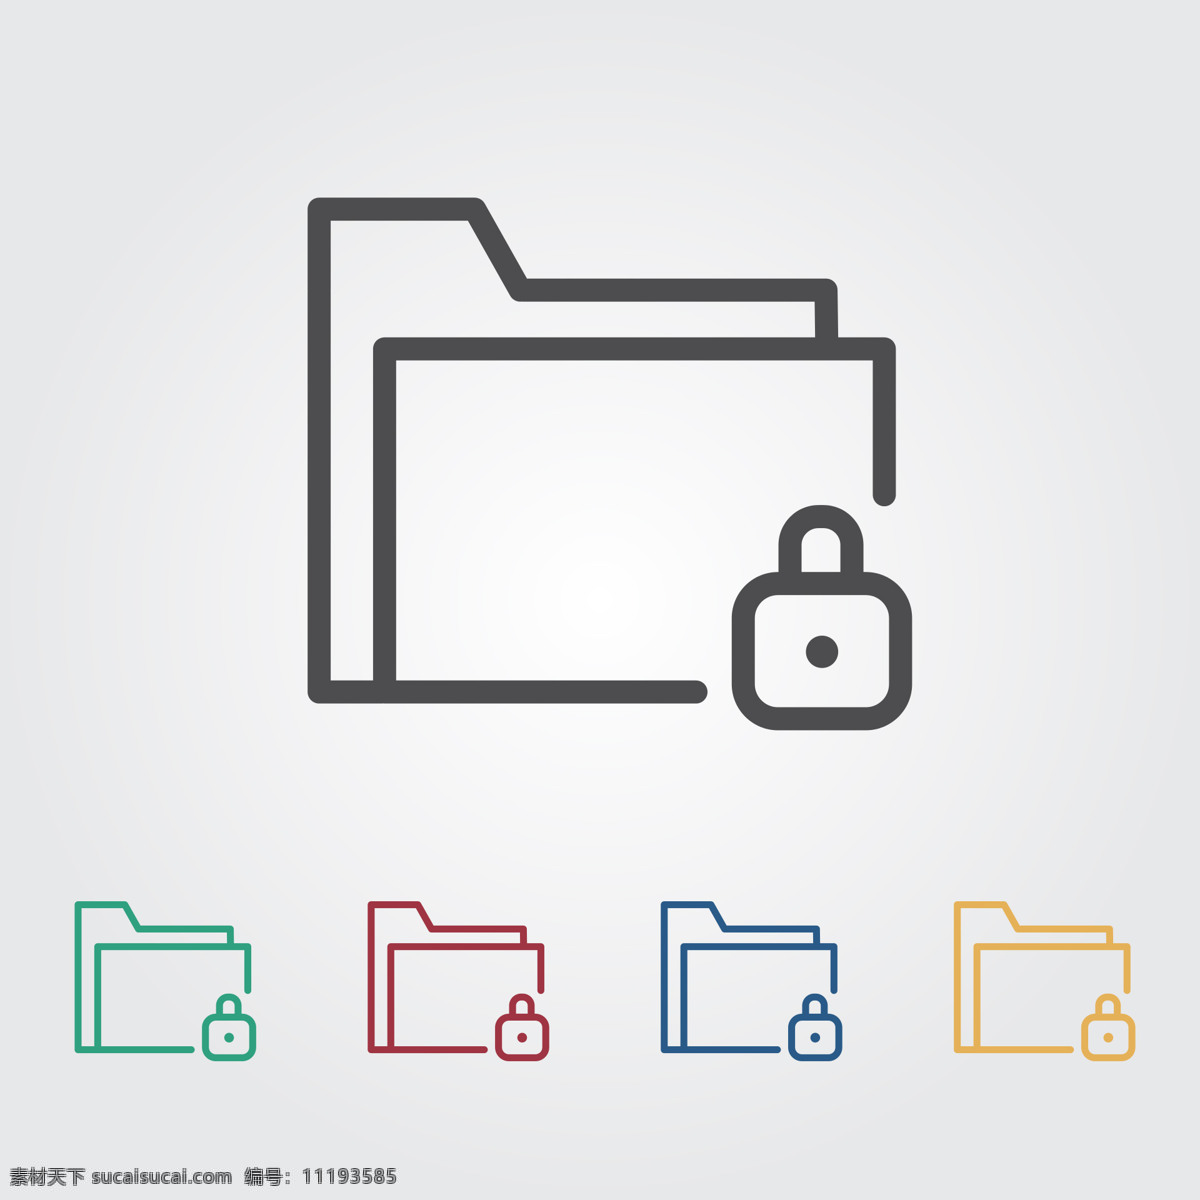 上锁图标 锁 文件夹 图标 数据 文档 符号 安全 信息 保护 业务 文件 卡通设计